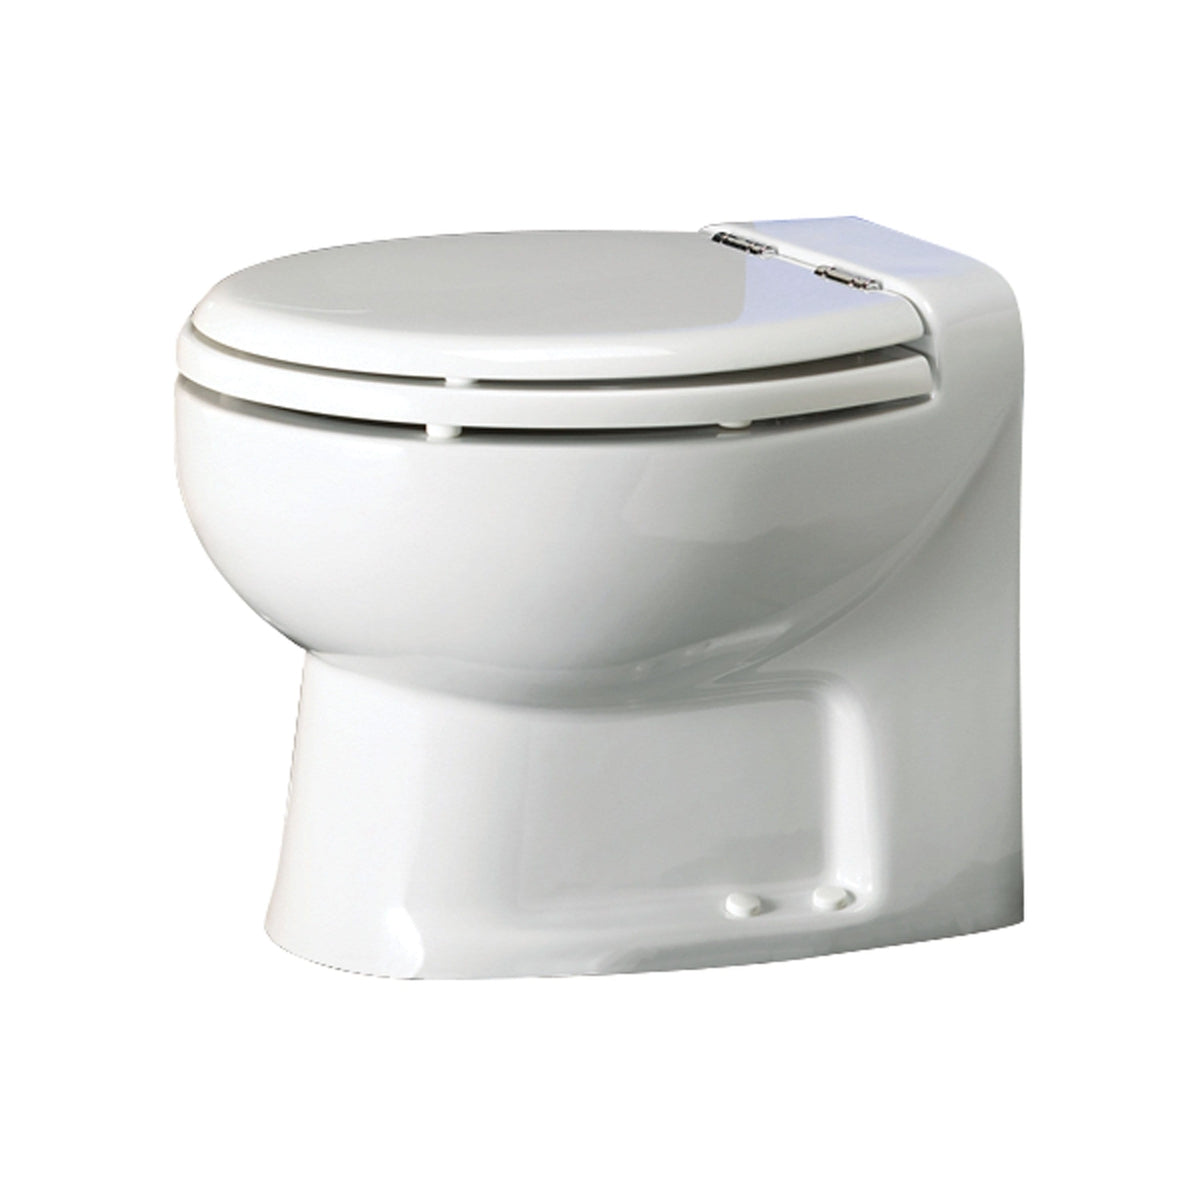 Thetford Not Qualified for Free Shipping Thetford Tecma Silence Plus 2 Mode 12v RV Toilet White/Chrome #38460